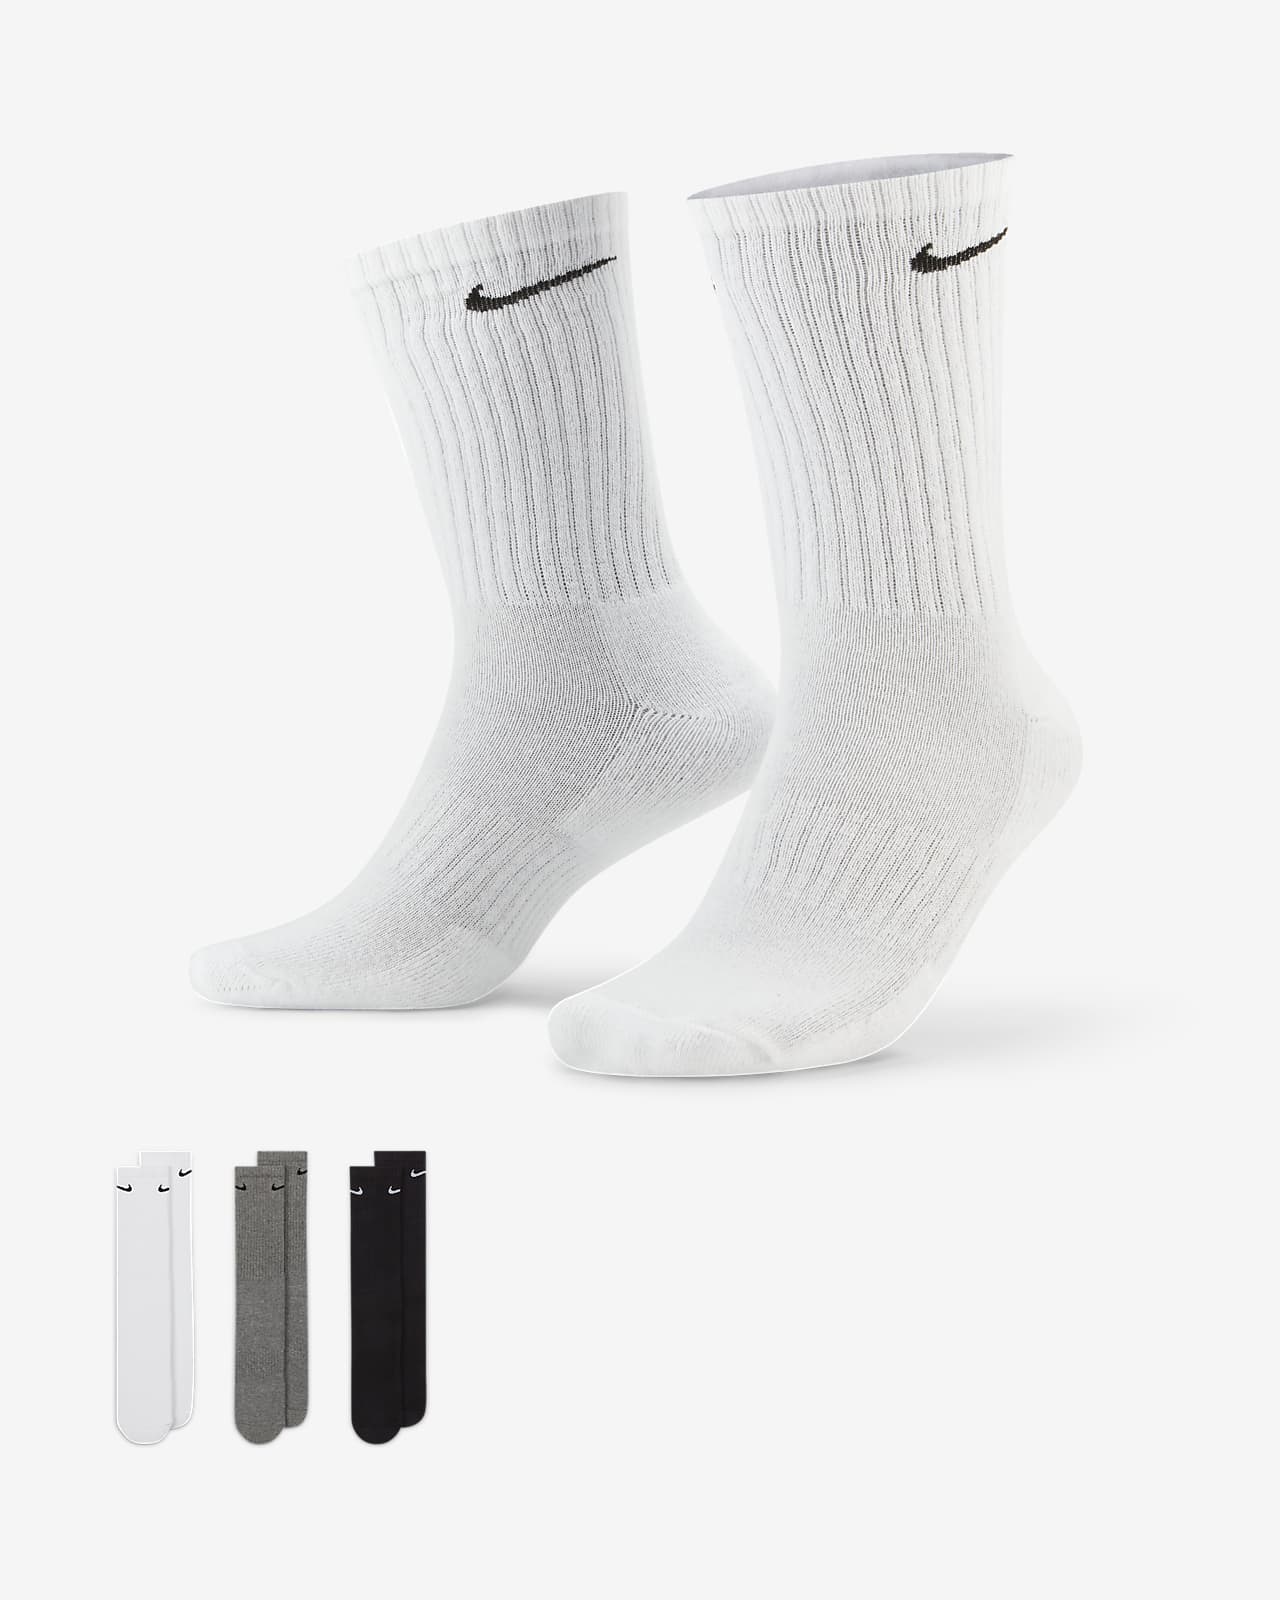 Football Socks. Nike LU